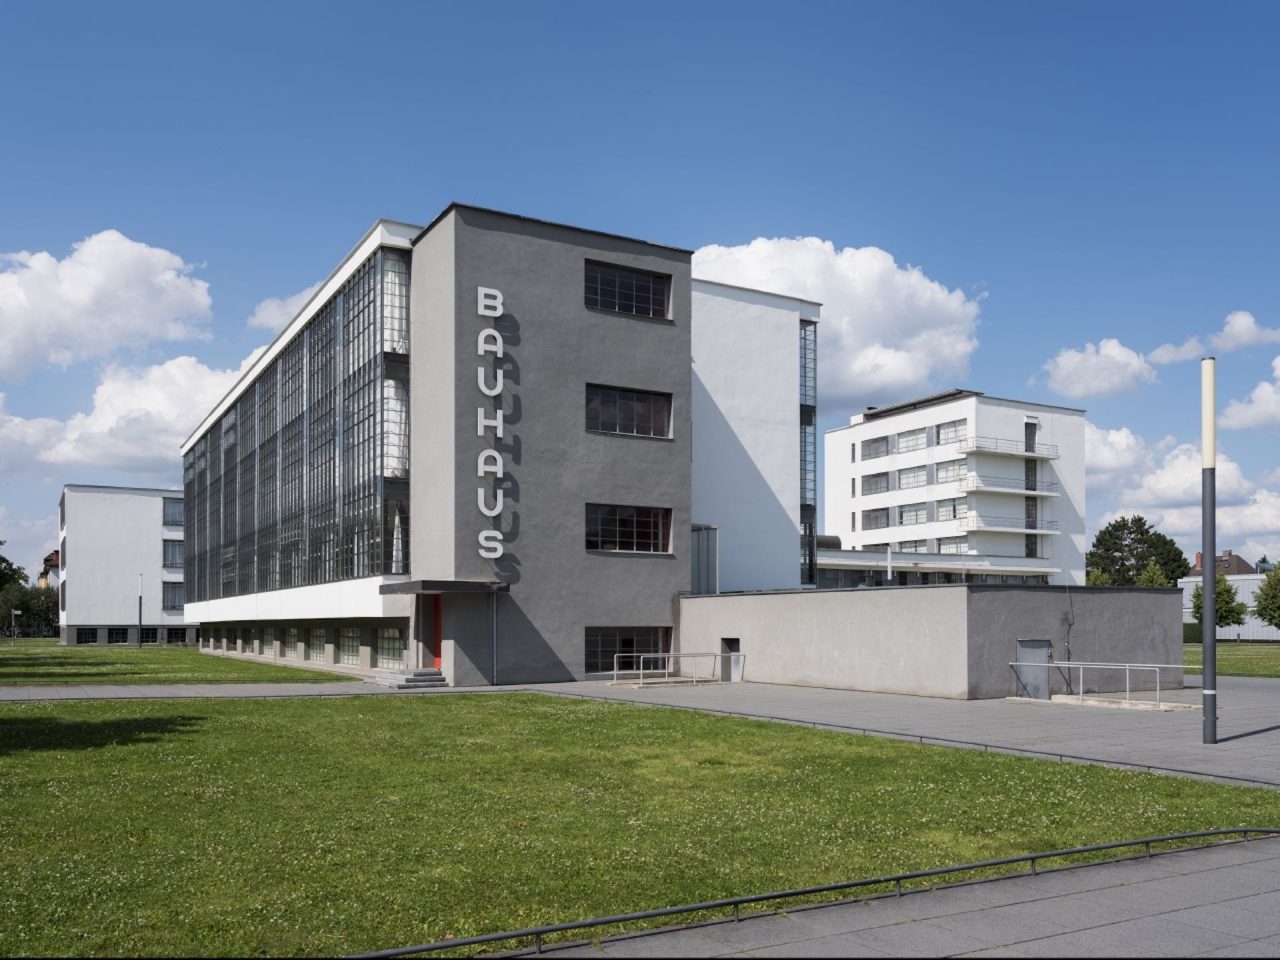 Bauhausgebäude (1925-26), Architekt: Walter Gropius, Ansicht von Süd-West, 2017